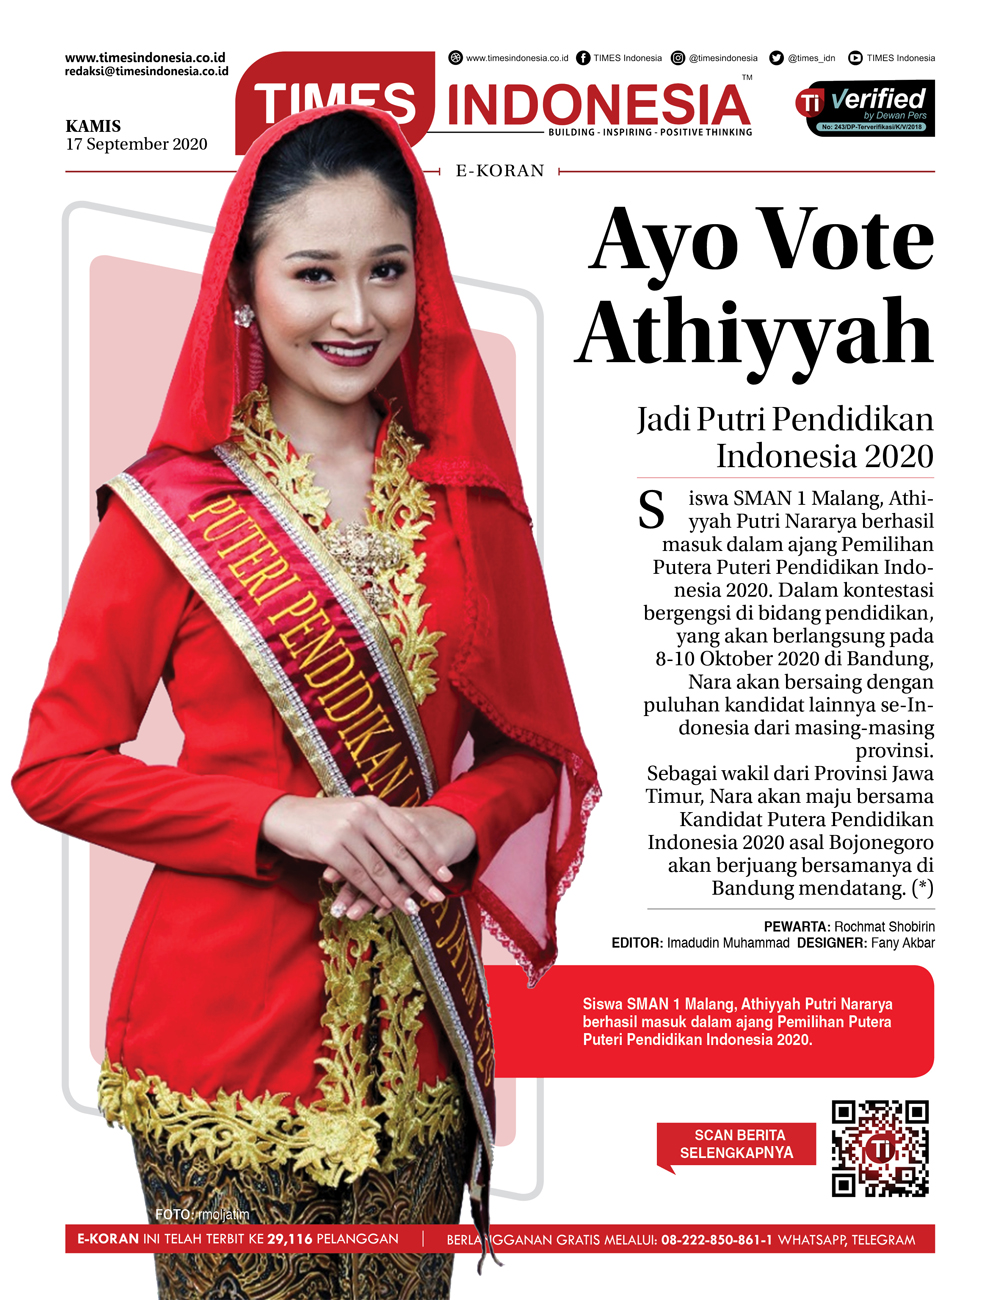 Edisi-Kamis-17-September-2020-Ayo-Vote-Athiyyah2.jpg